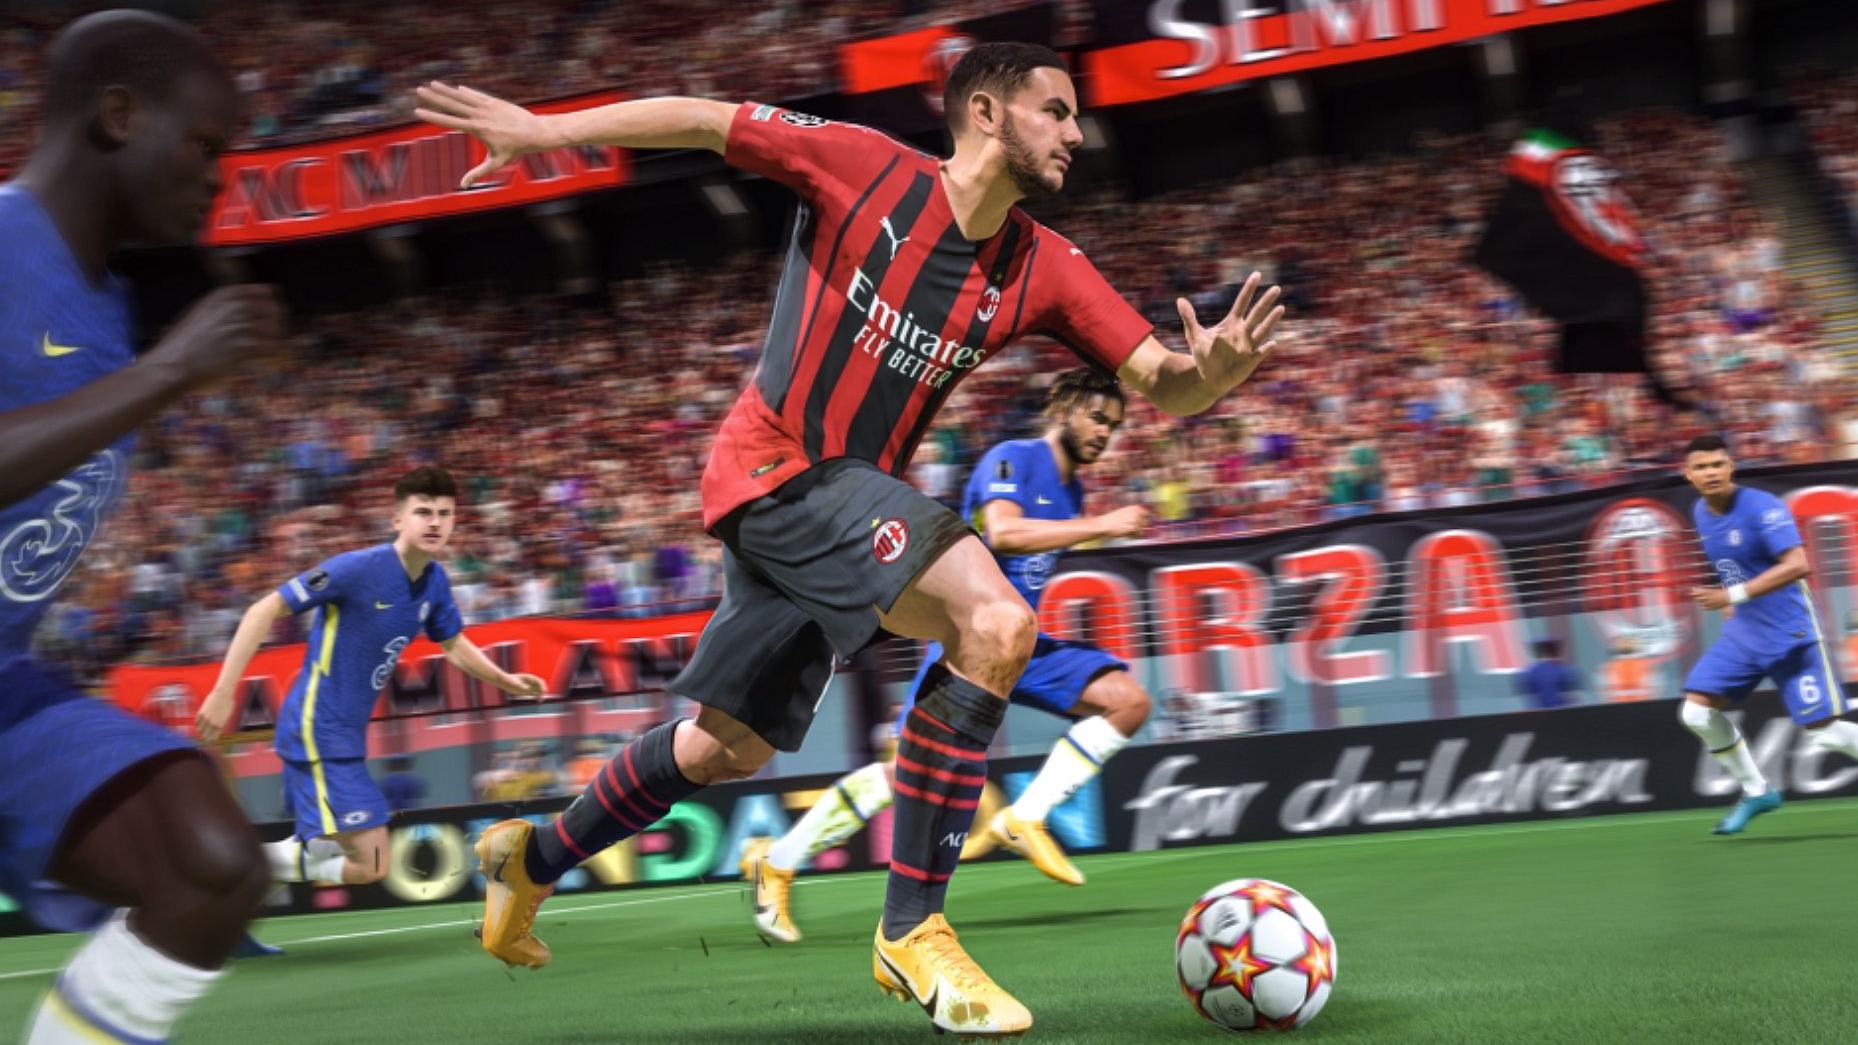 FIFA 22 ekrano kopija, kurioje pavaizduotas žaidėjas, bėgantis su kamuoliu